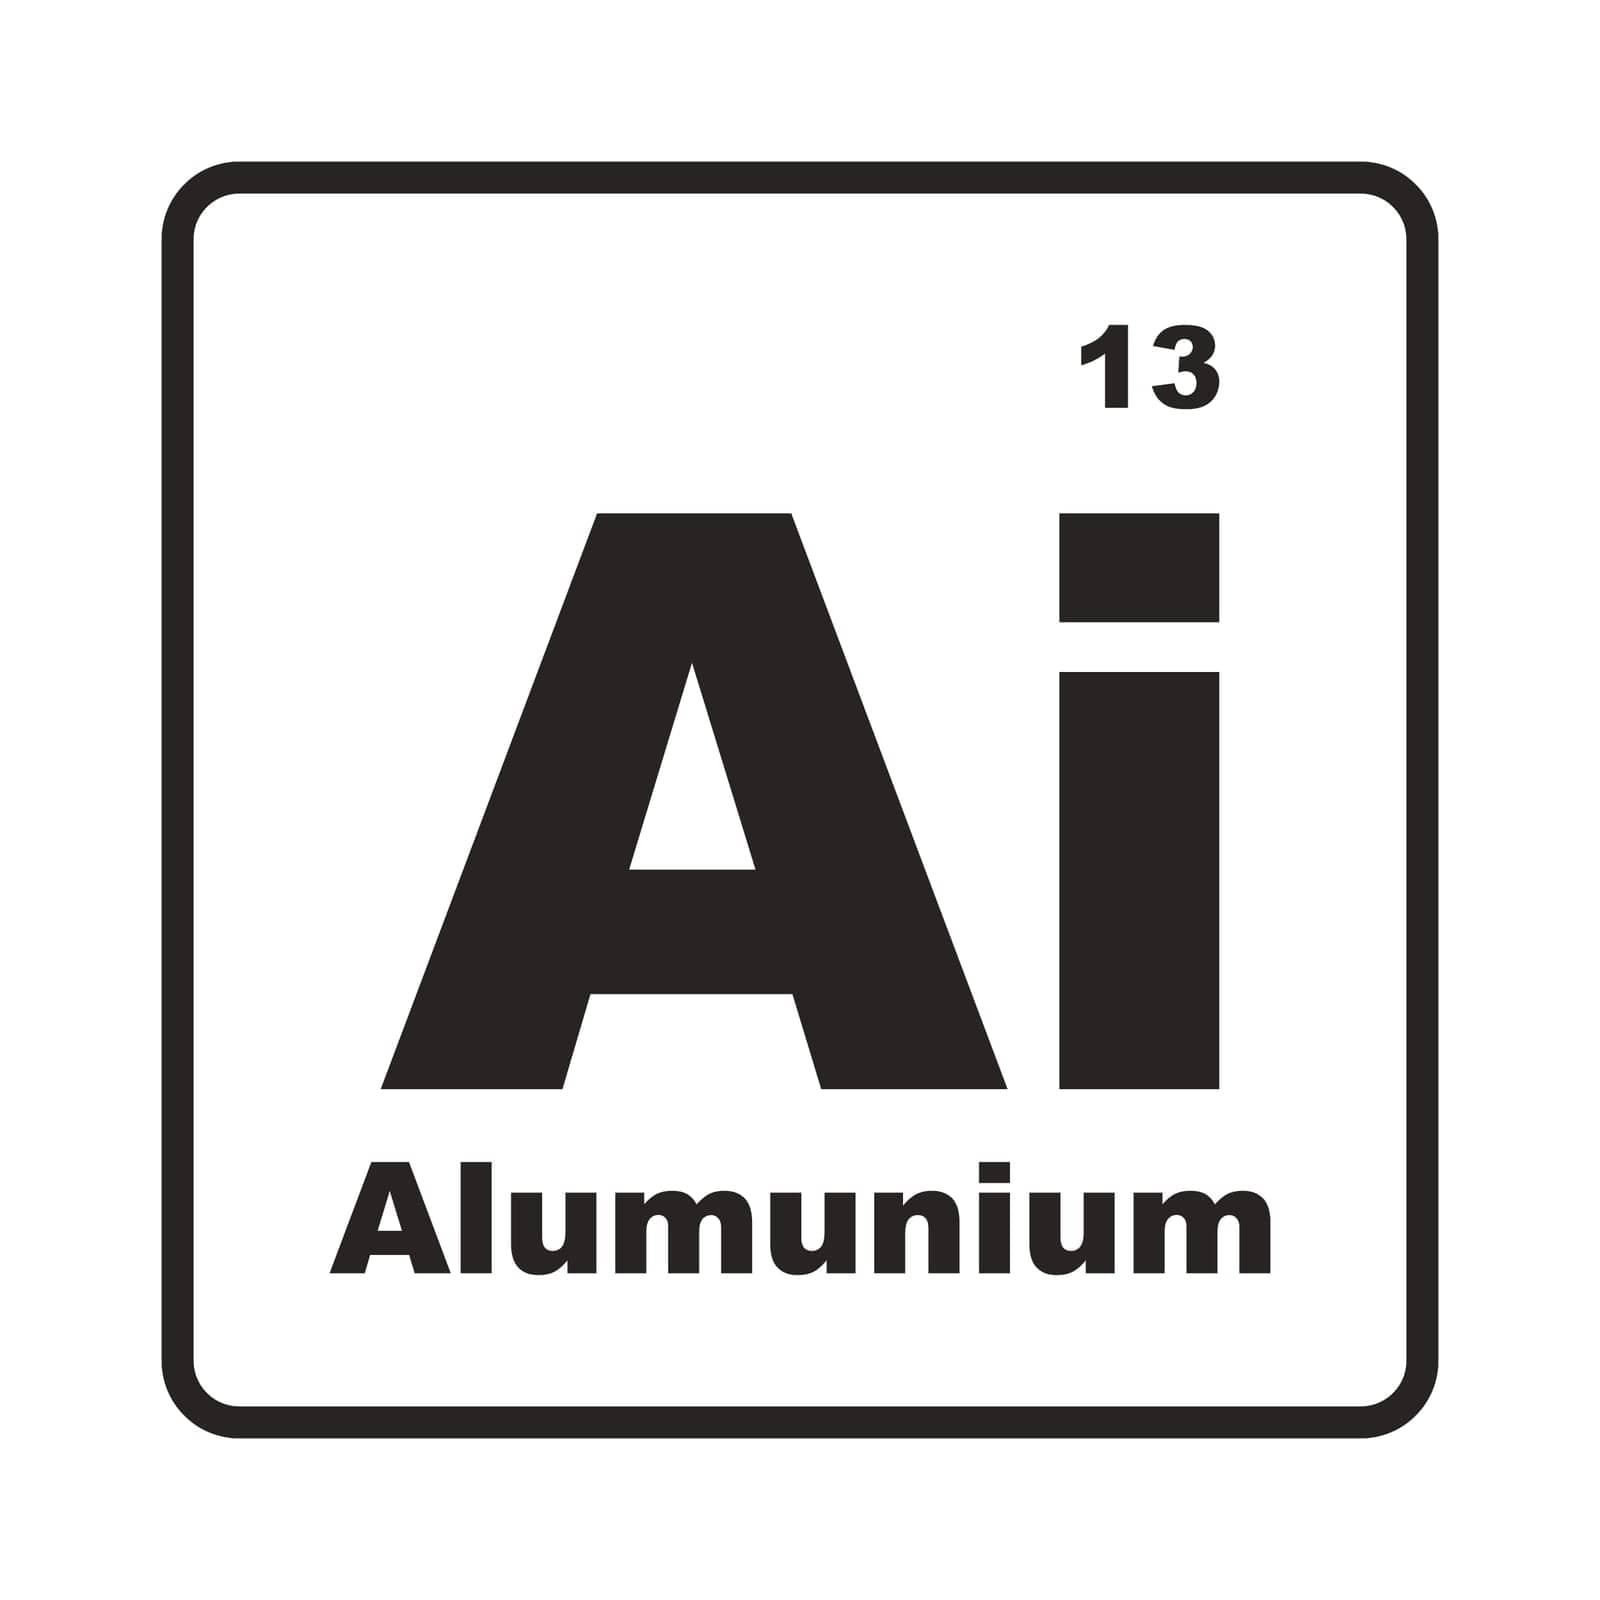 Alumunium element icon vector illustration symbol design